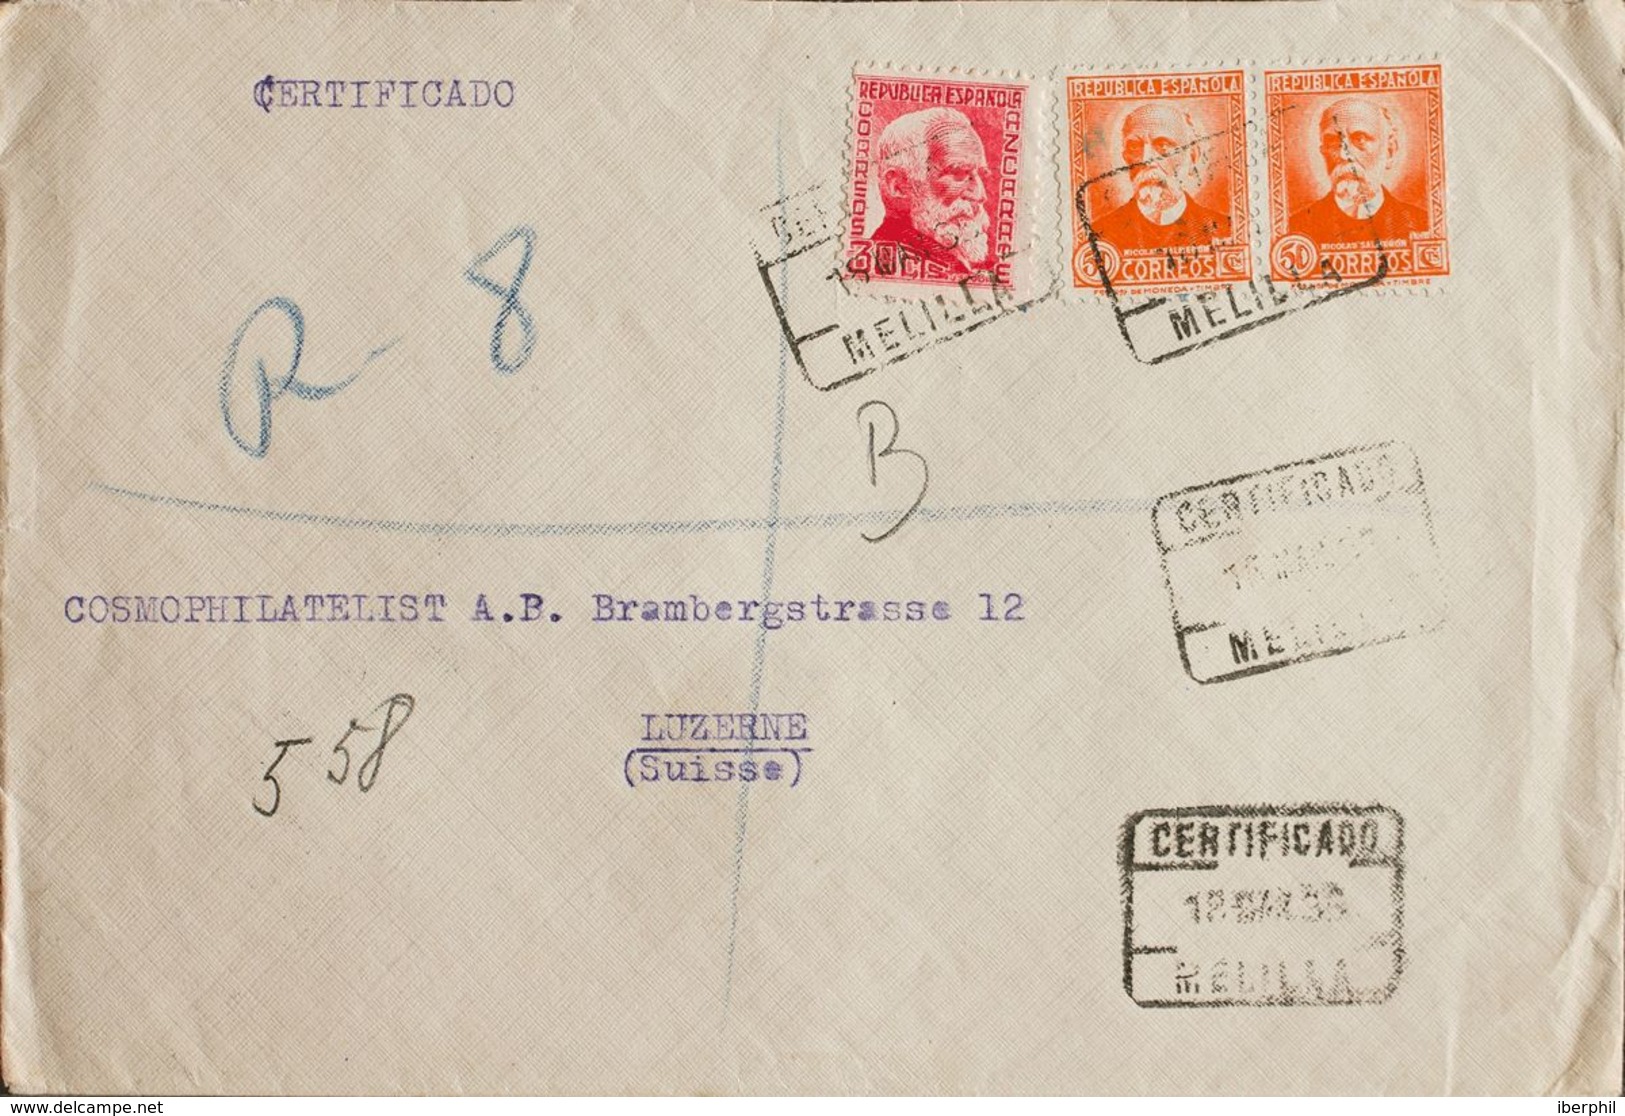 España. República Española Correo Certificado. Sobre 686, 671(2). 1935. 30 Cts Rosa Y 50 Cts Naranja, Dos Sellos. Certif - Covers & Documents